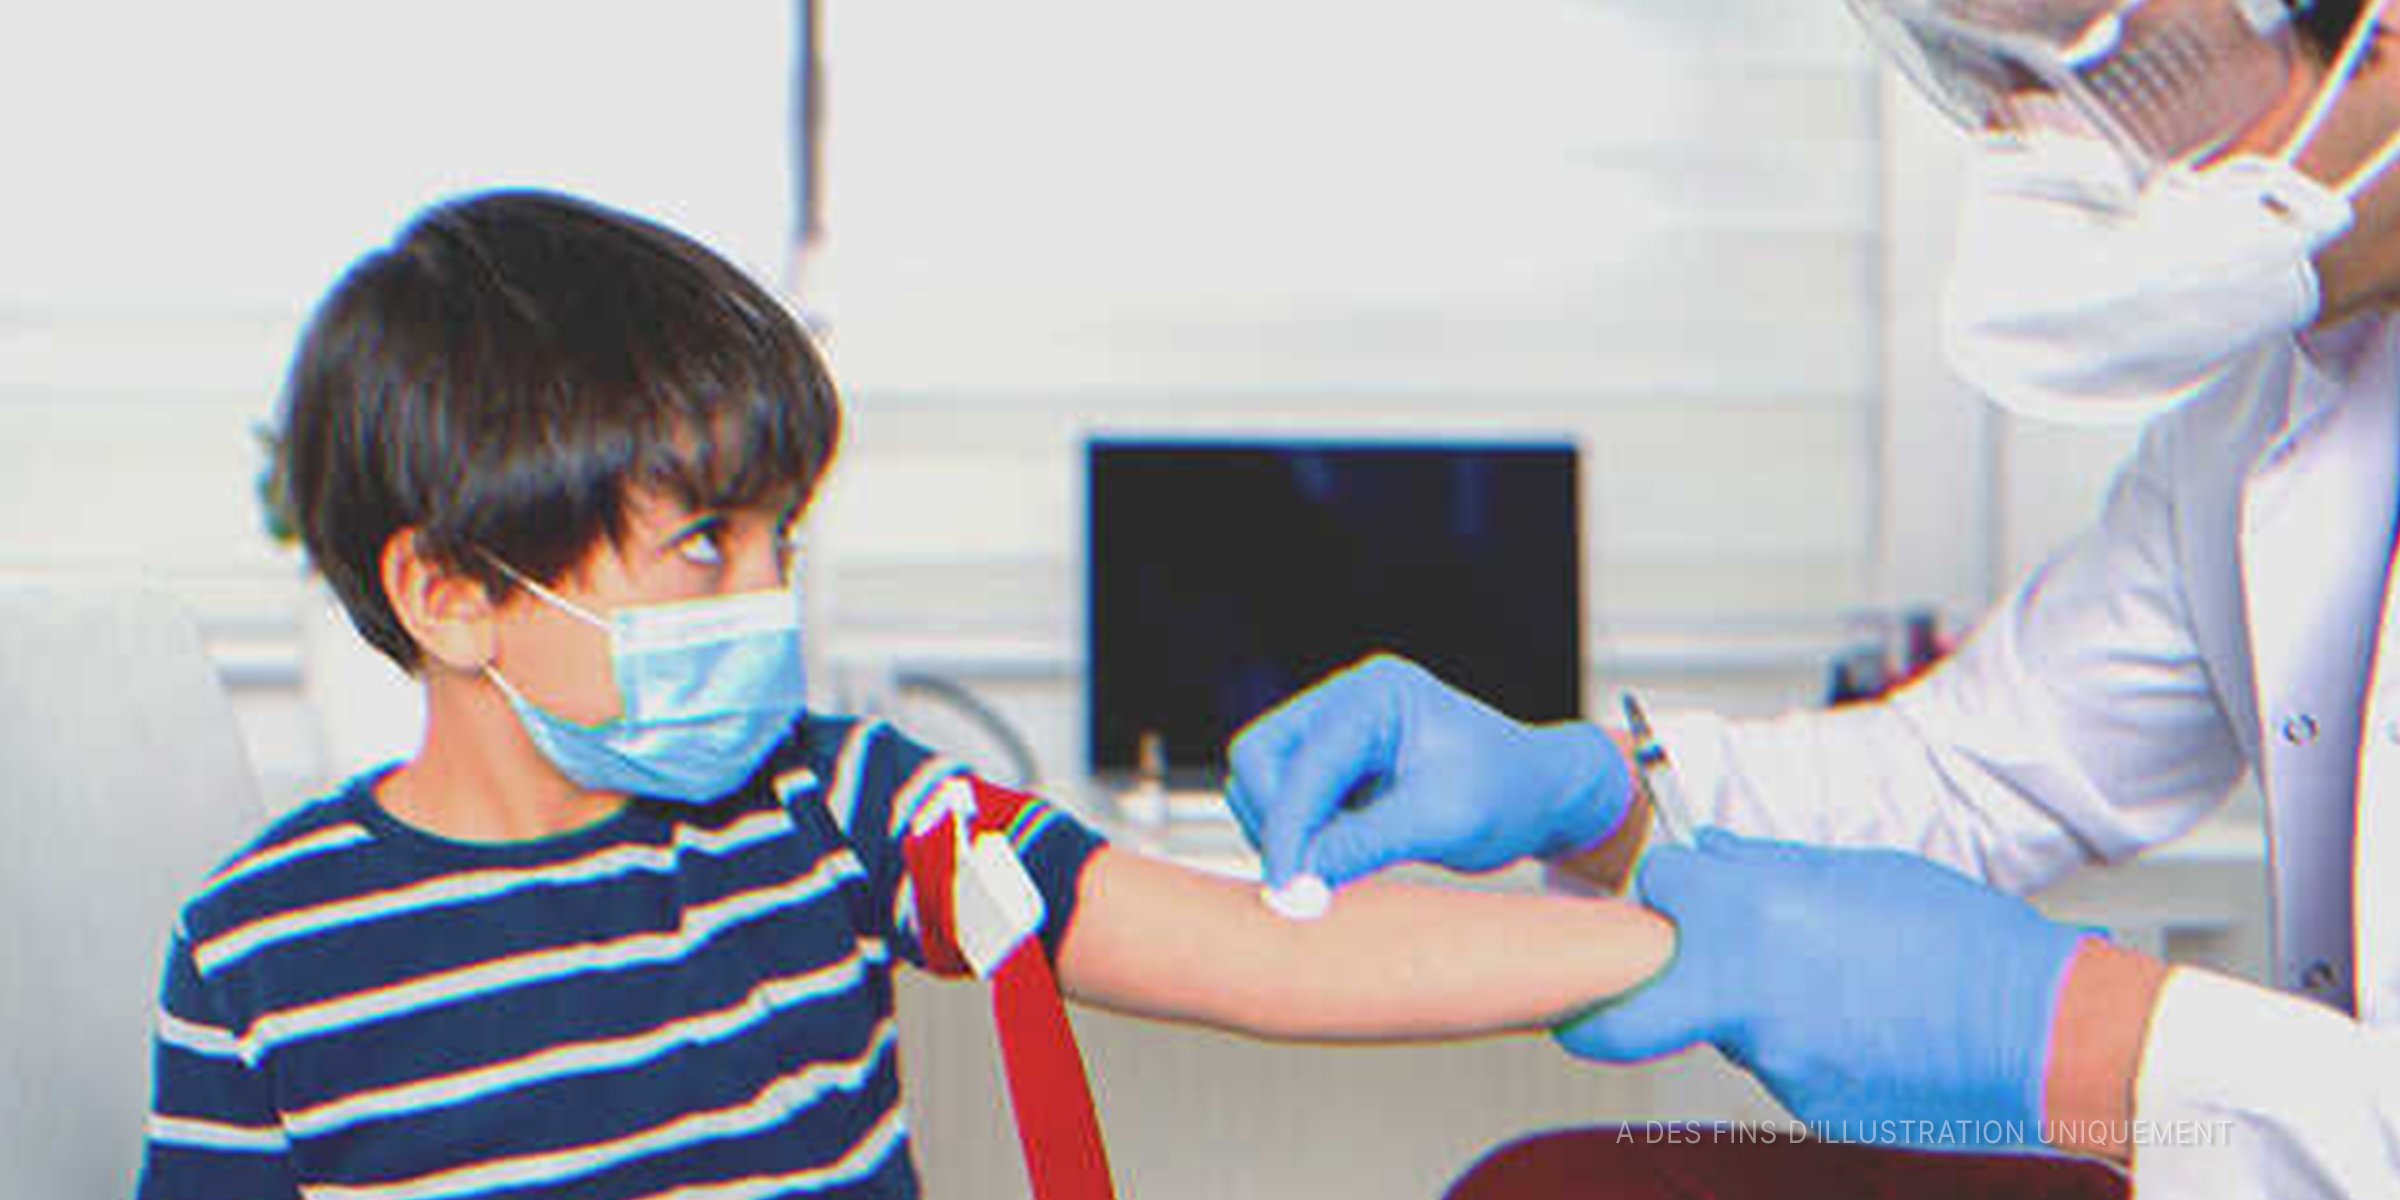 Un petit garçon qui se fait piquer à l'hôpital | Source : Getty Images